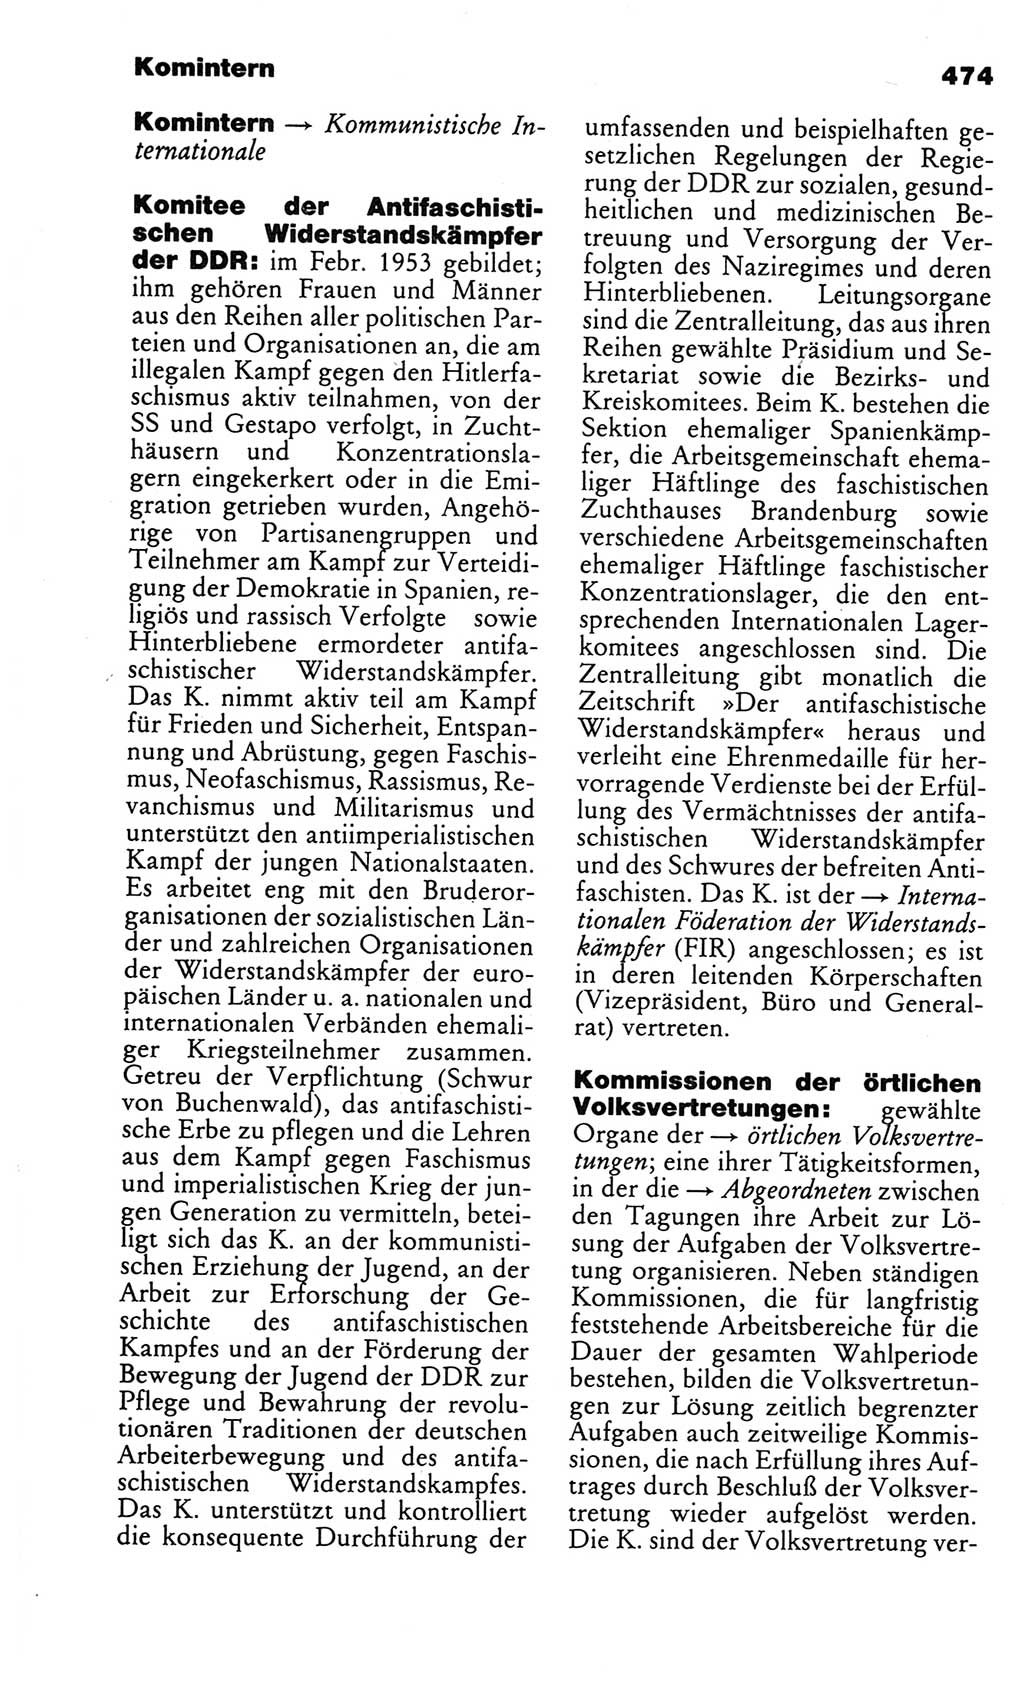 Kleines politisches Wörterbuch [Deutsche Demokratische Republik (DDR)] 1986, Seite 474 (Kl. pol. Wb. DDR 1986, S. 474)